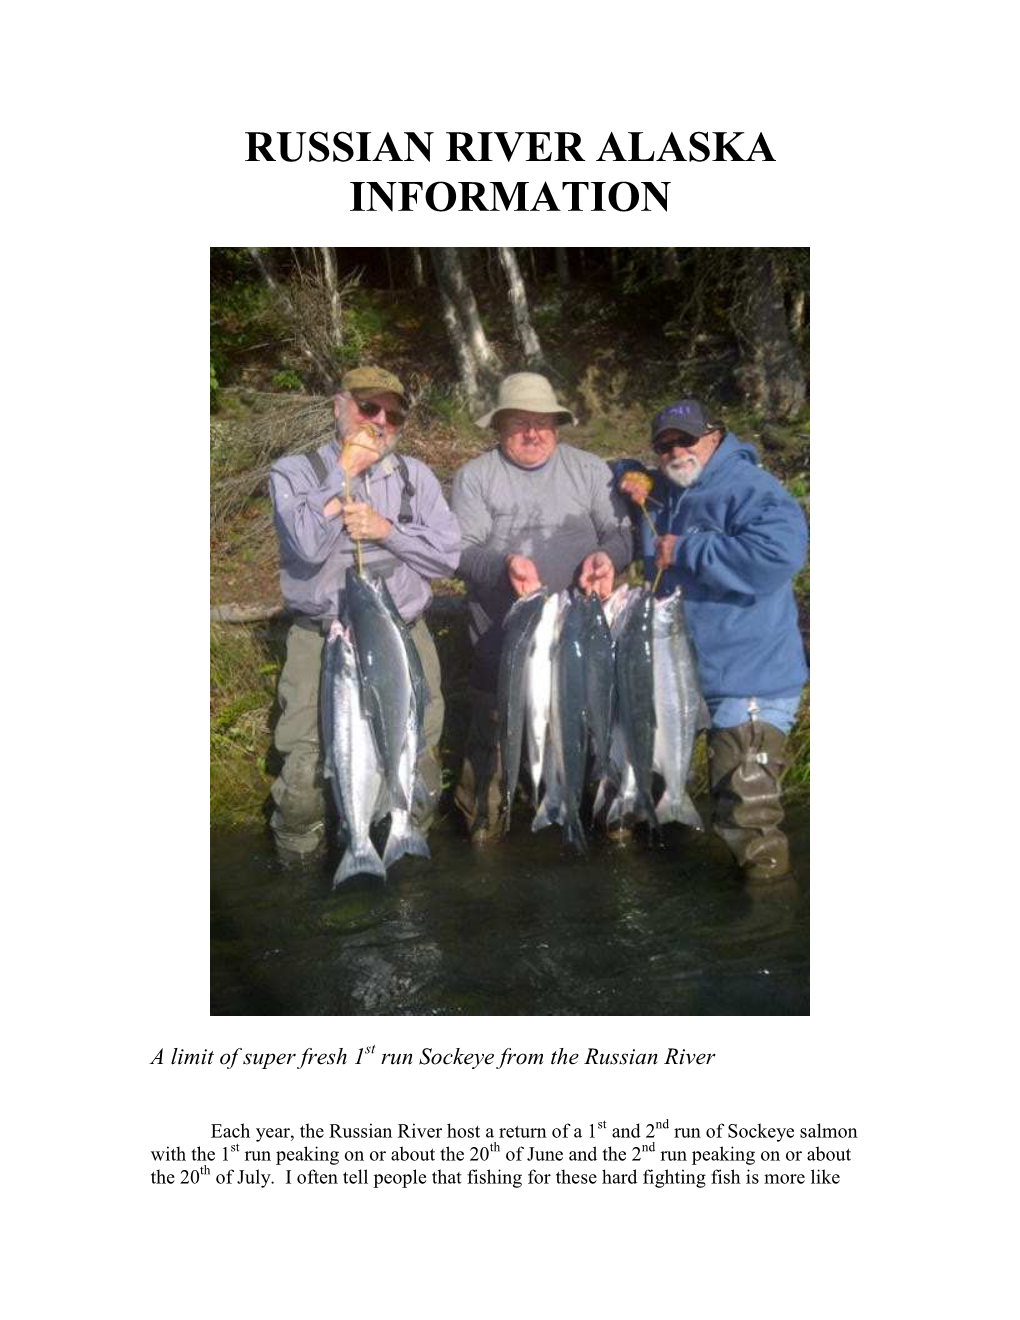 Russian River Alaska Information